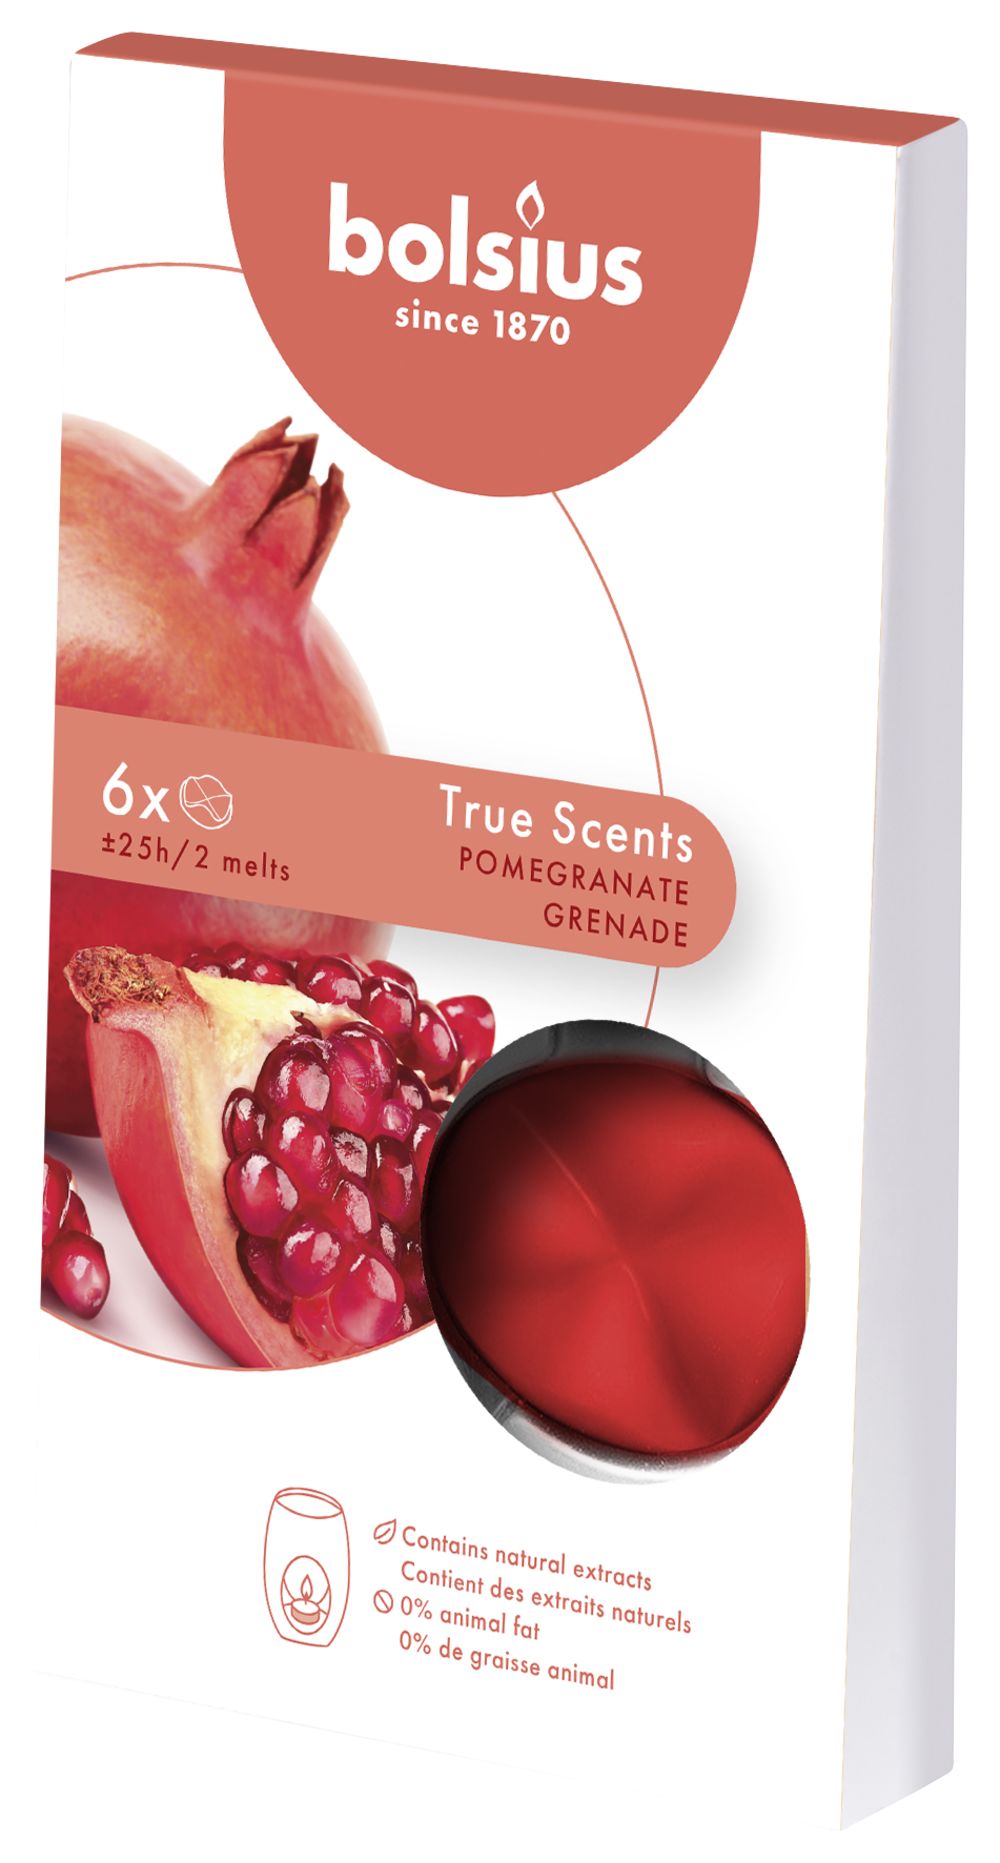 Dinkarville wang Jachtluipaard Bolsius Wax Melts True Scents Pomegranate Kopen? | Cookinglife